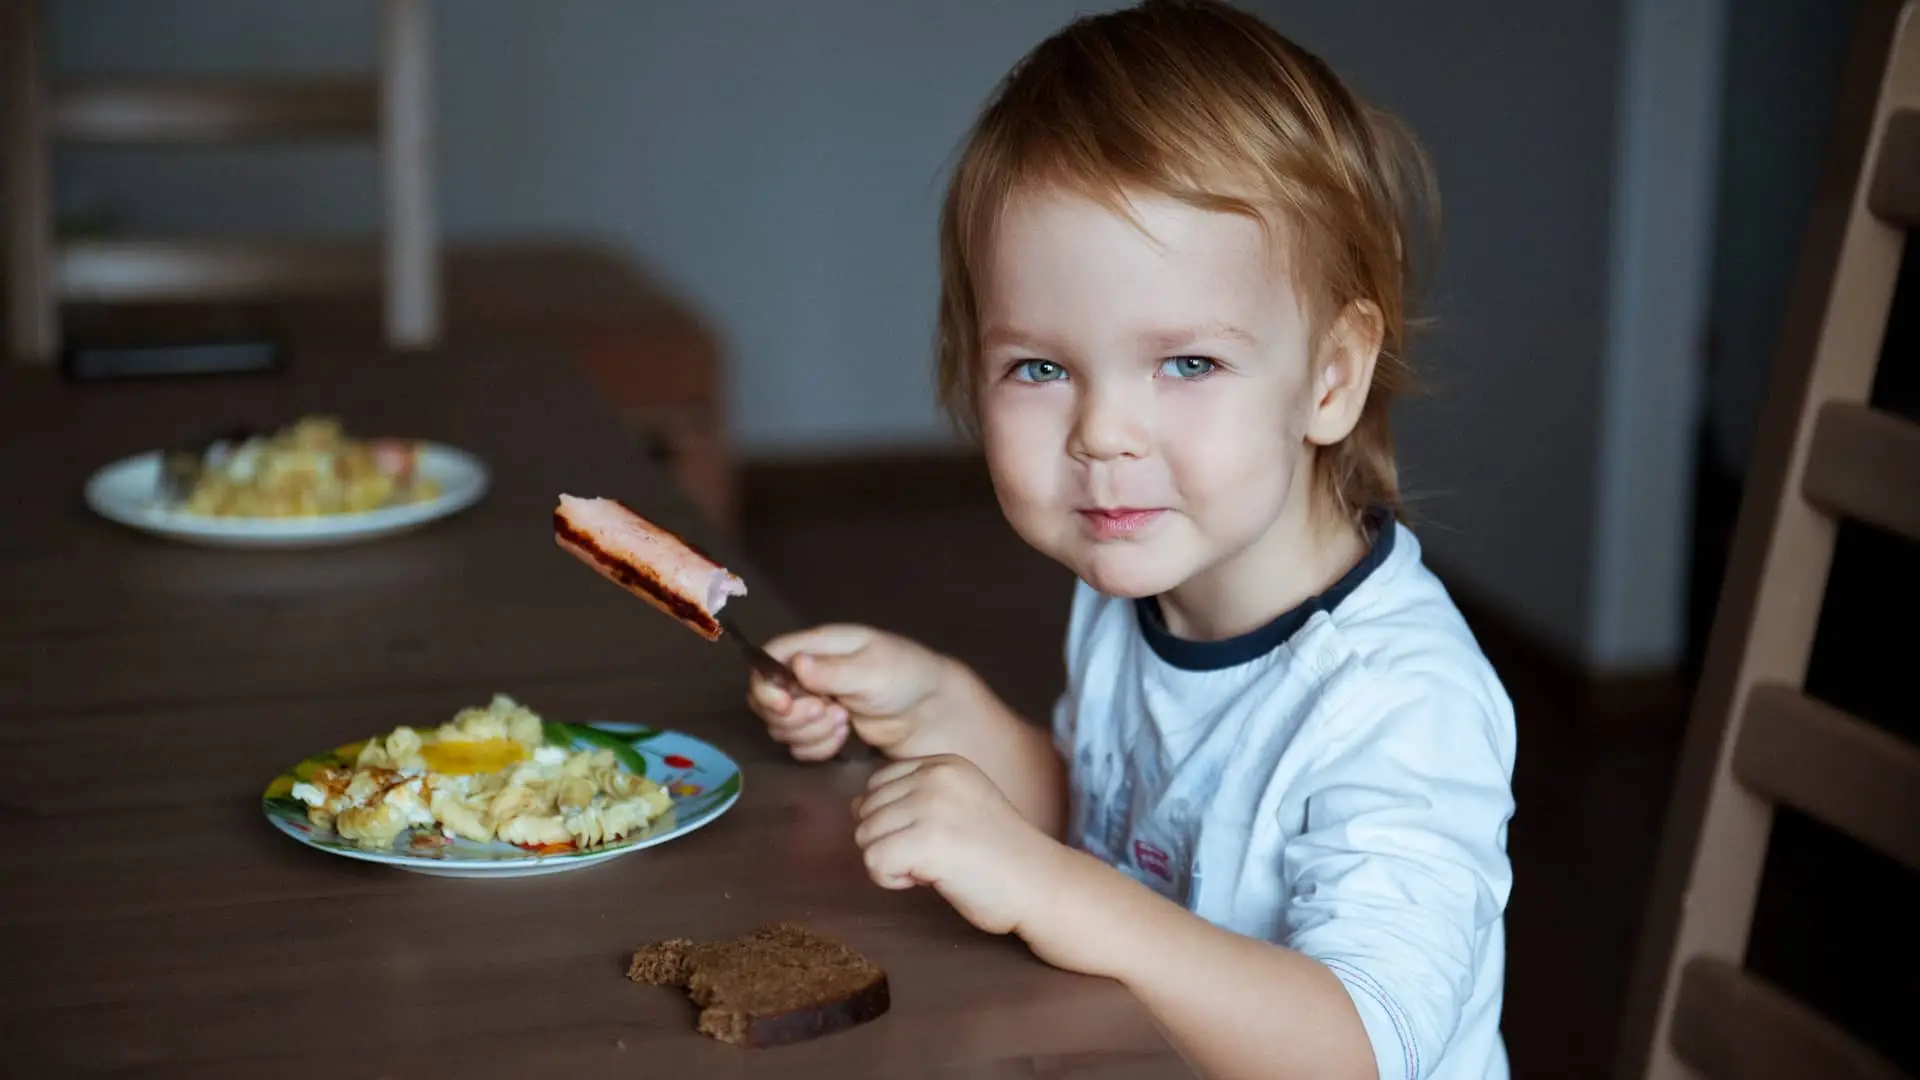 Comidas para niños de 2 años: menú semanal saludable y equilibrado